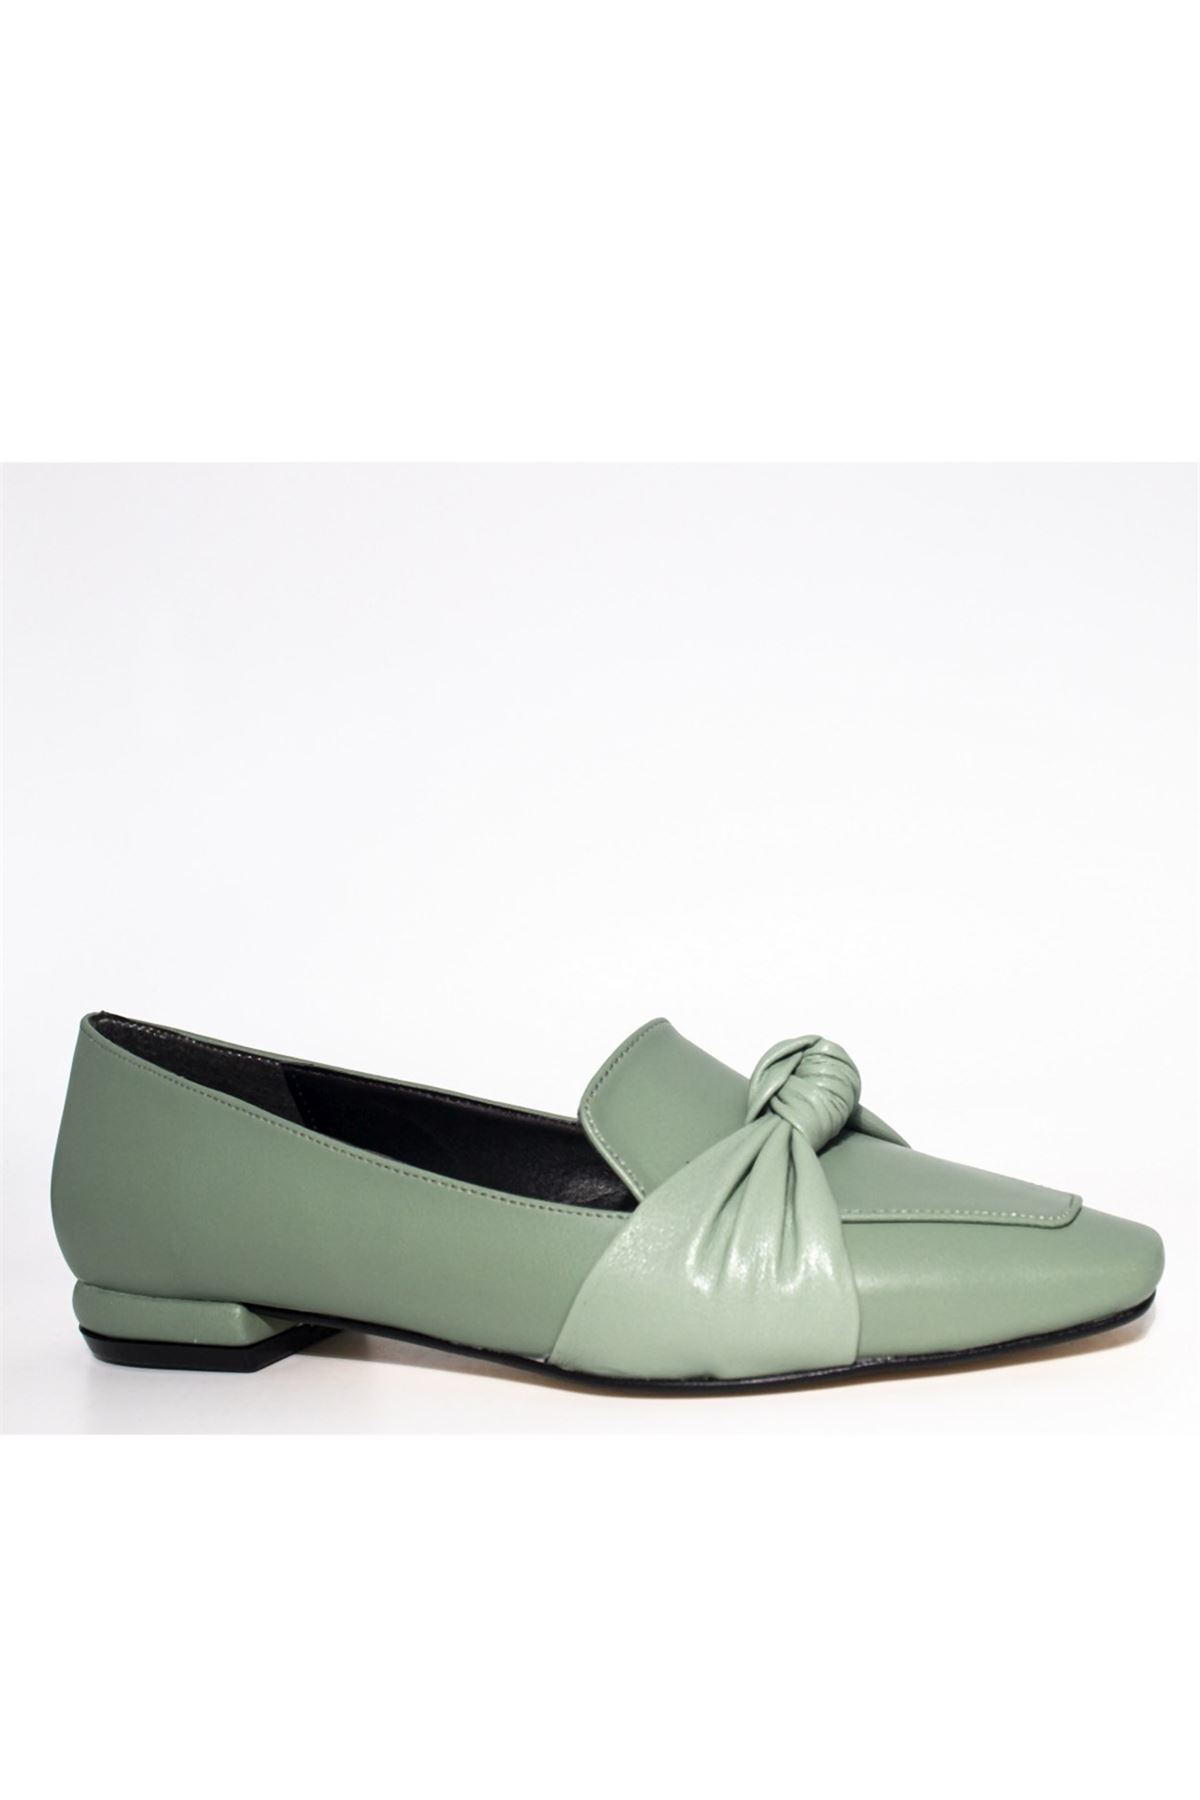 Kadın Önden Düğümlü Loafer Ayakkabı - Mint Yeşili